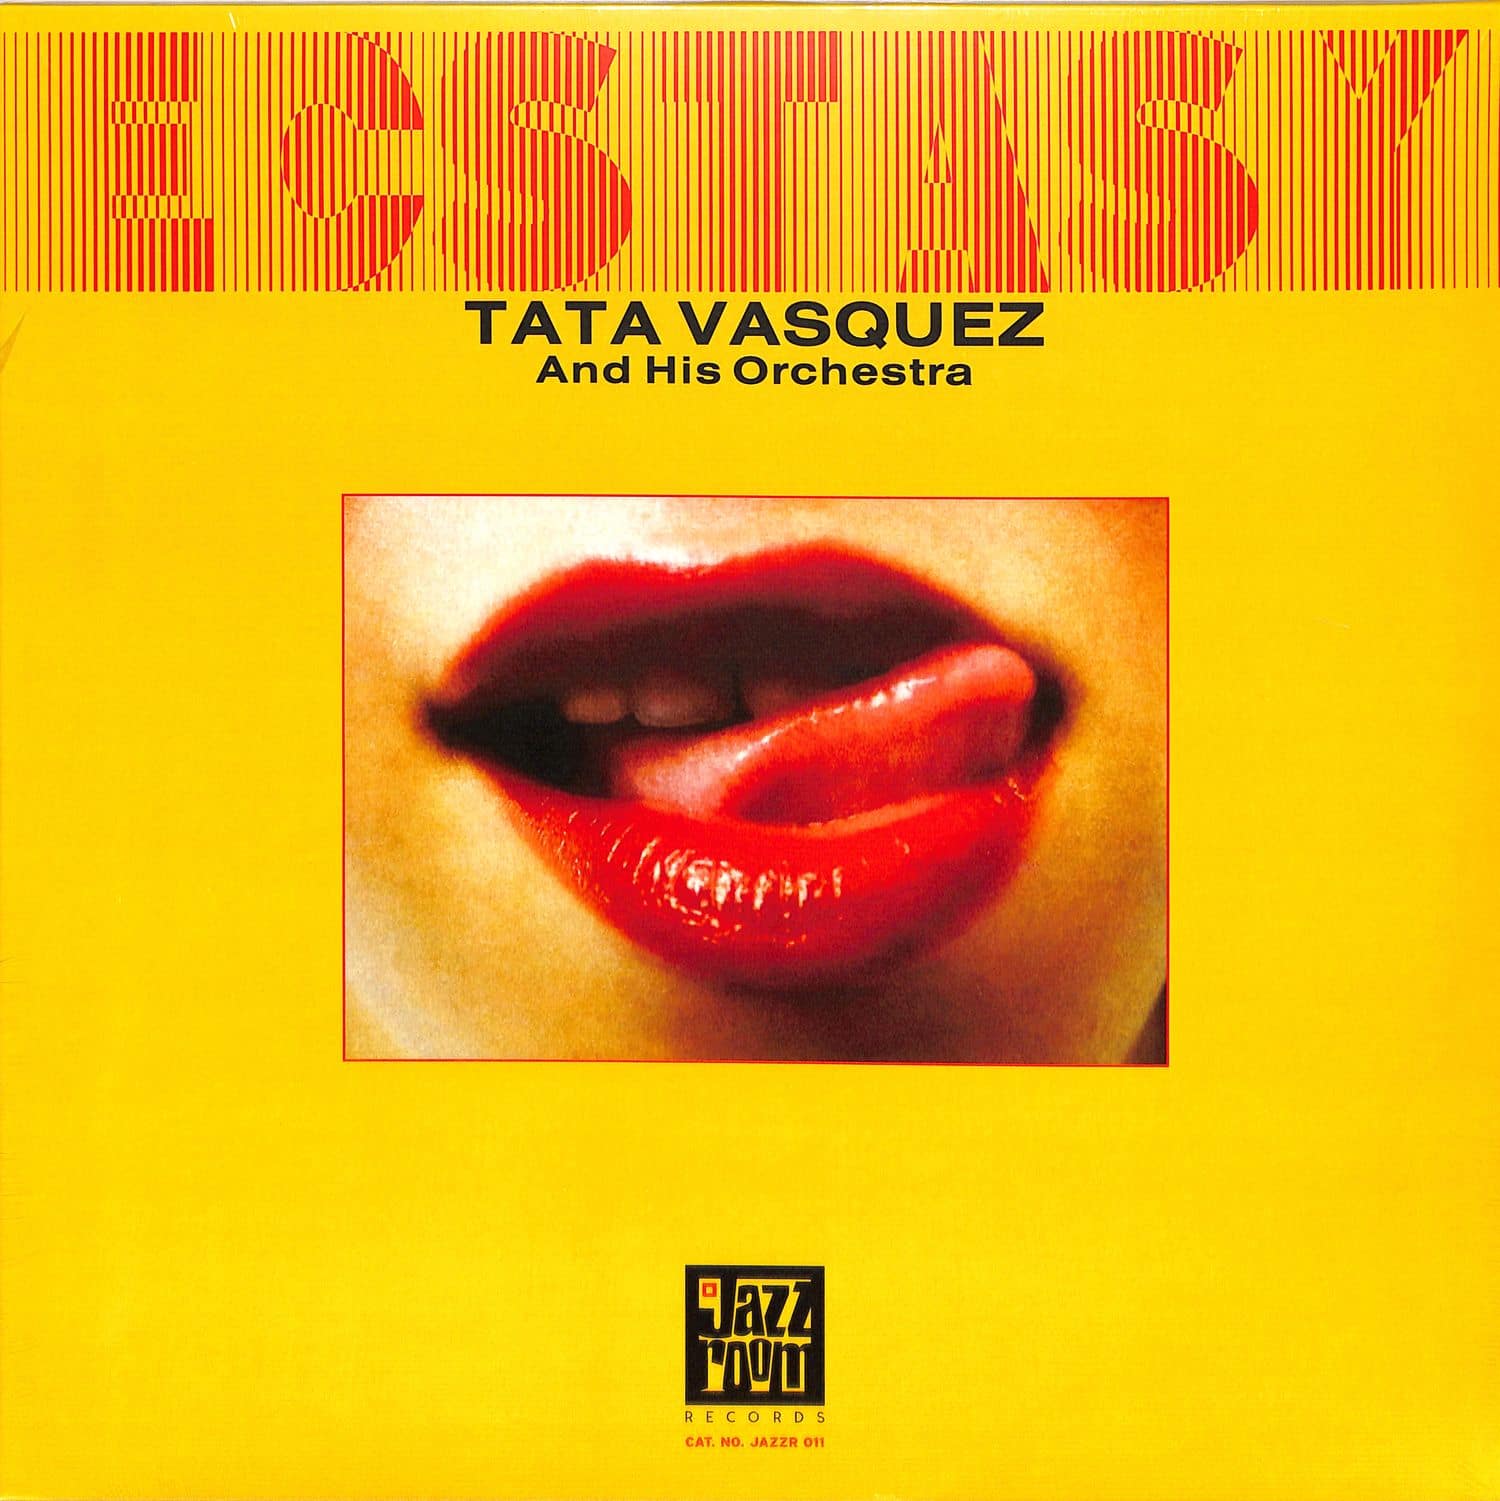 Tata Vasquez & His Orchestra - ECSTASY 